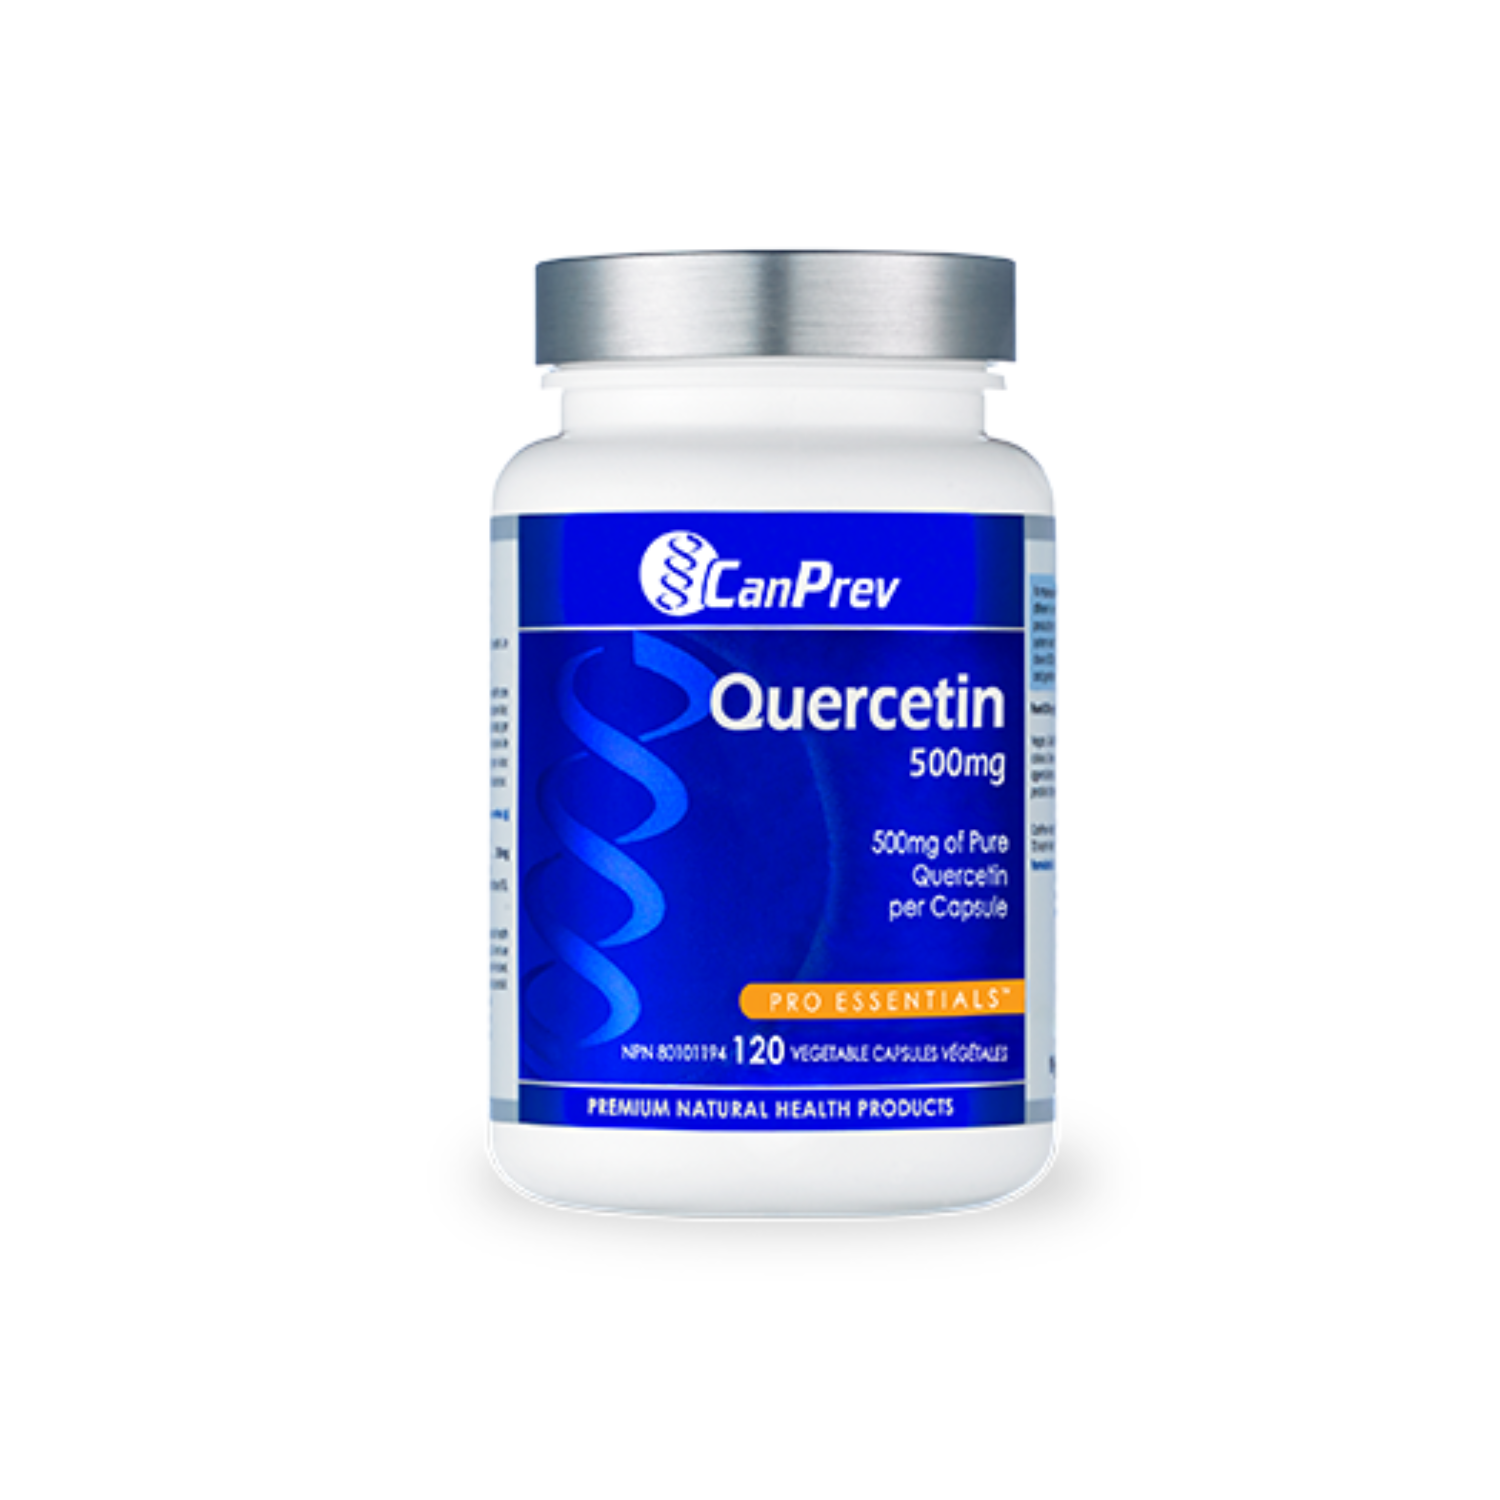 CanPrev Quercetin 500mg - The OC Pharmacy